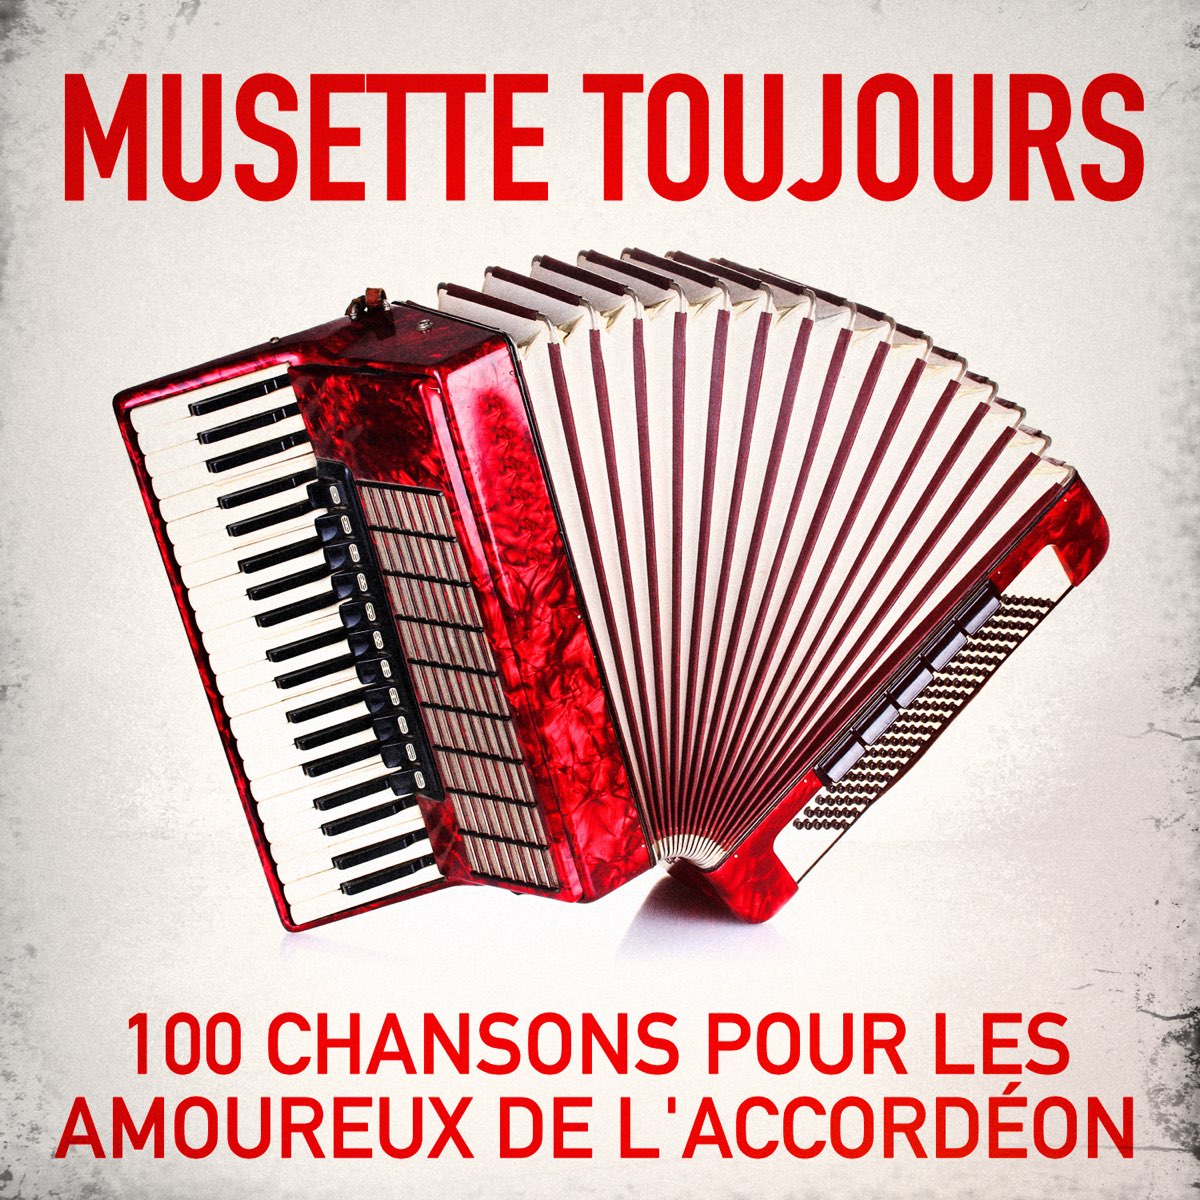 Musette toujours : 100 chansons pour les amoureux de l'accordéon – Album  par Multi-interprètes – Apple Music